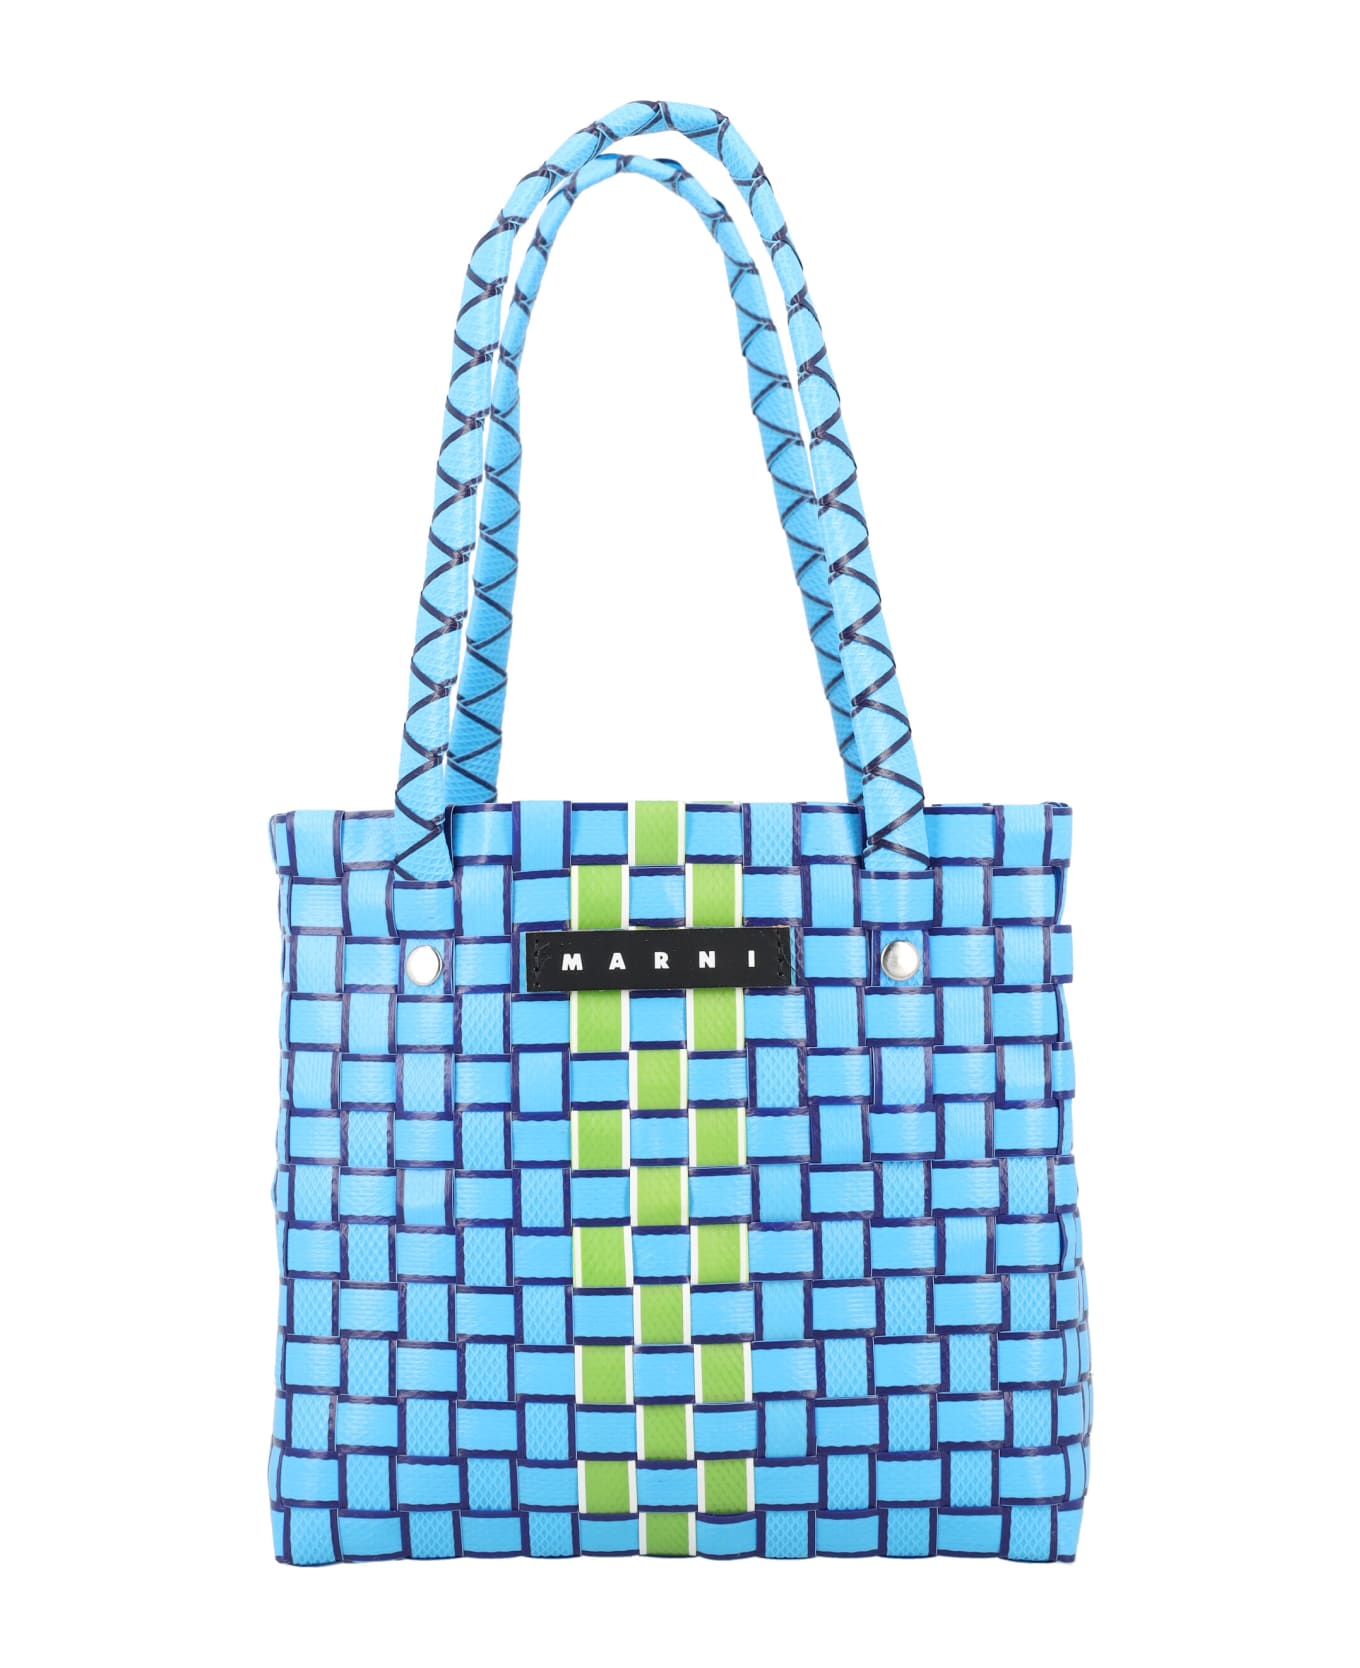 Marni LOGO Box Basket Bag - BLUE